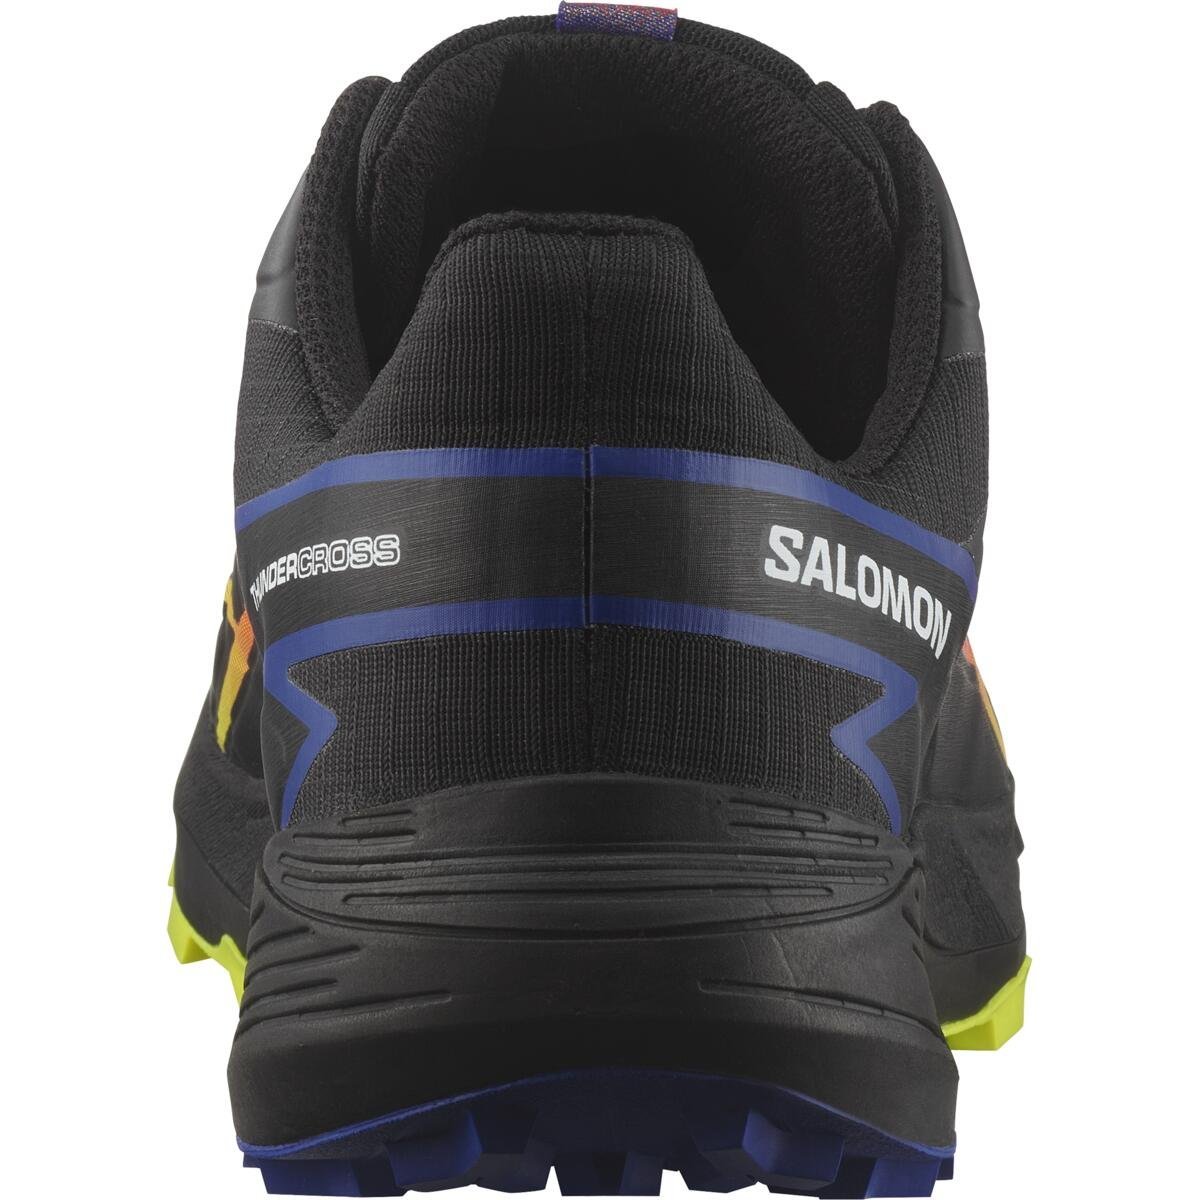 Obuv Salomon Thundercross GTX Blue Fire - čierna/modrá/červená/žltá